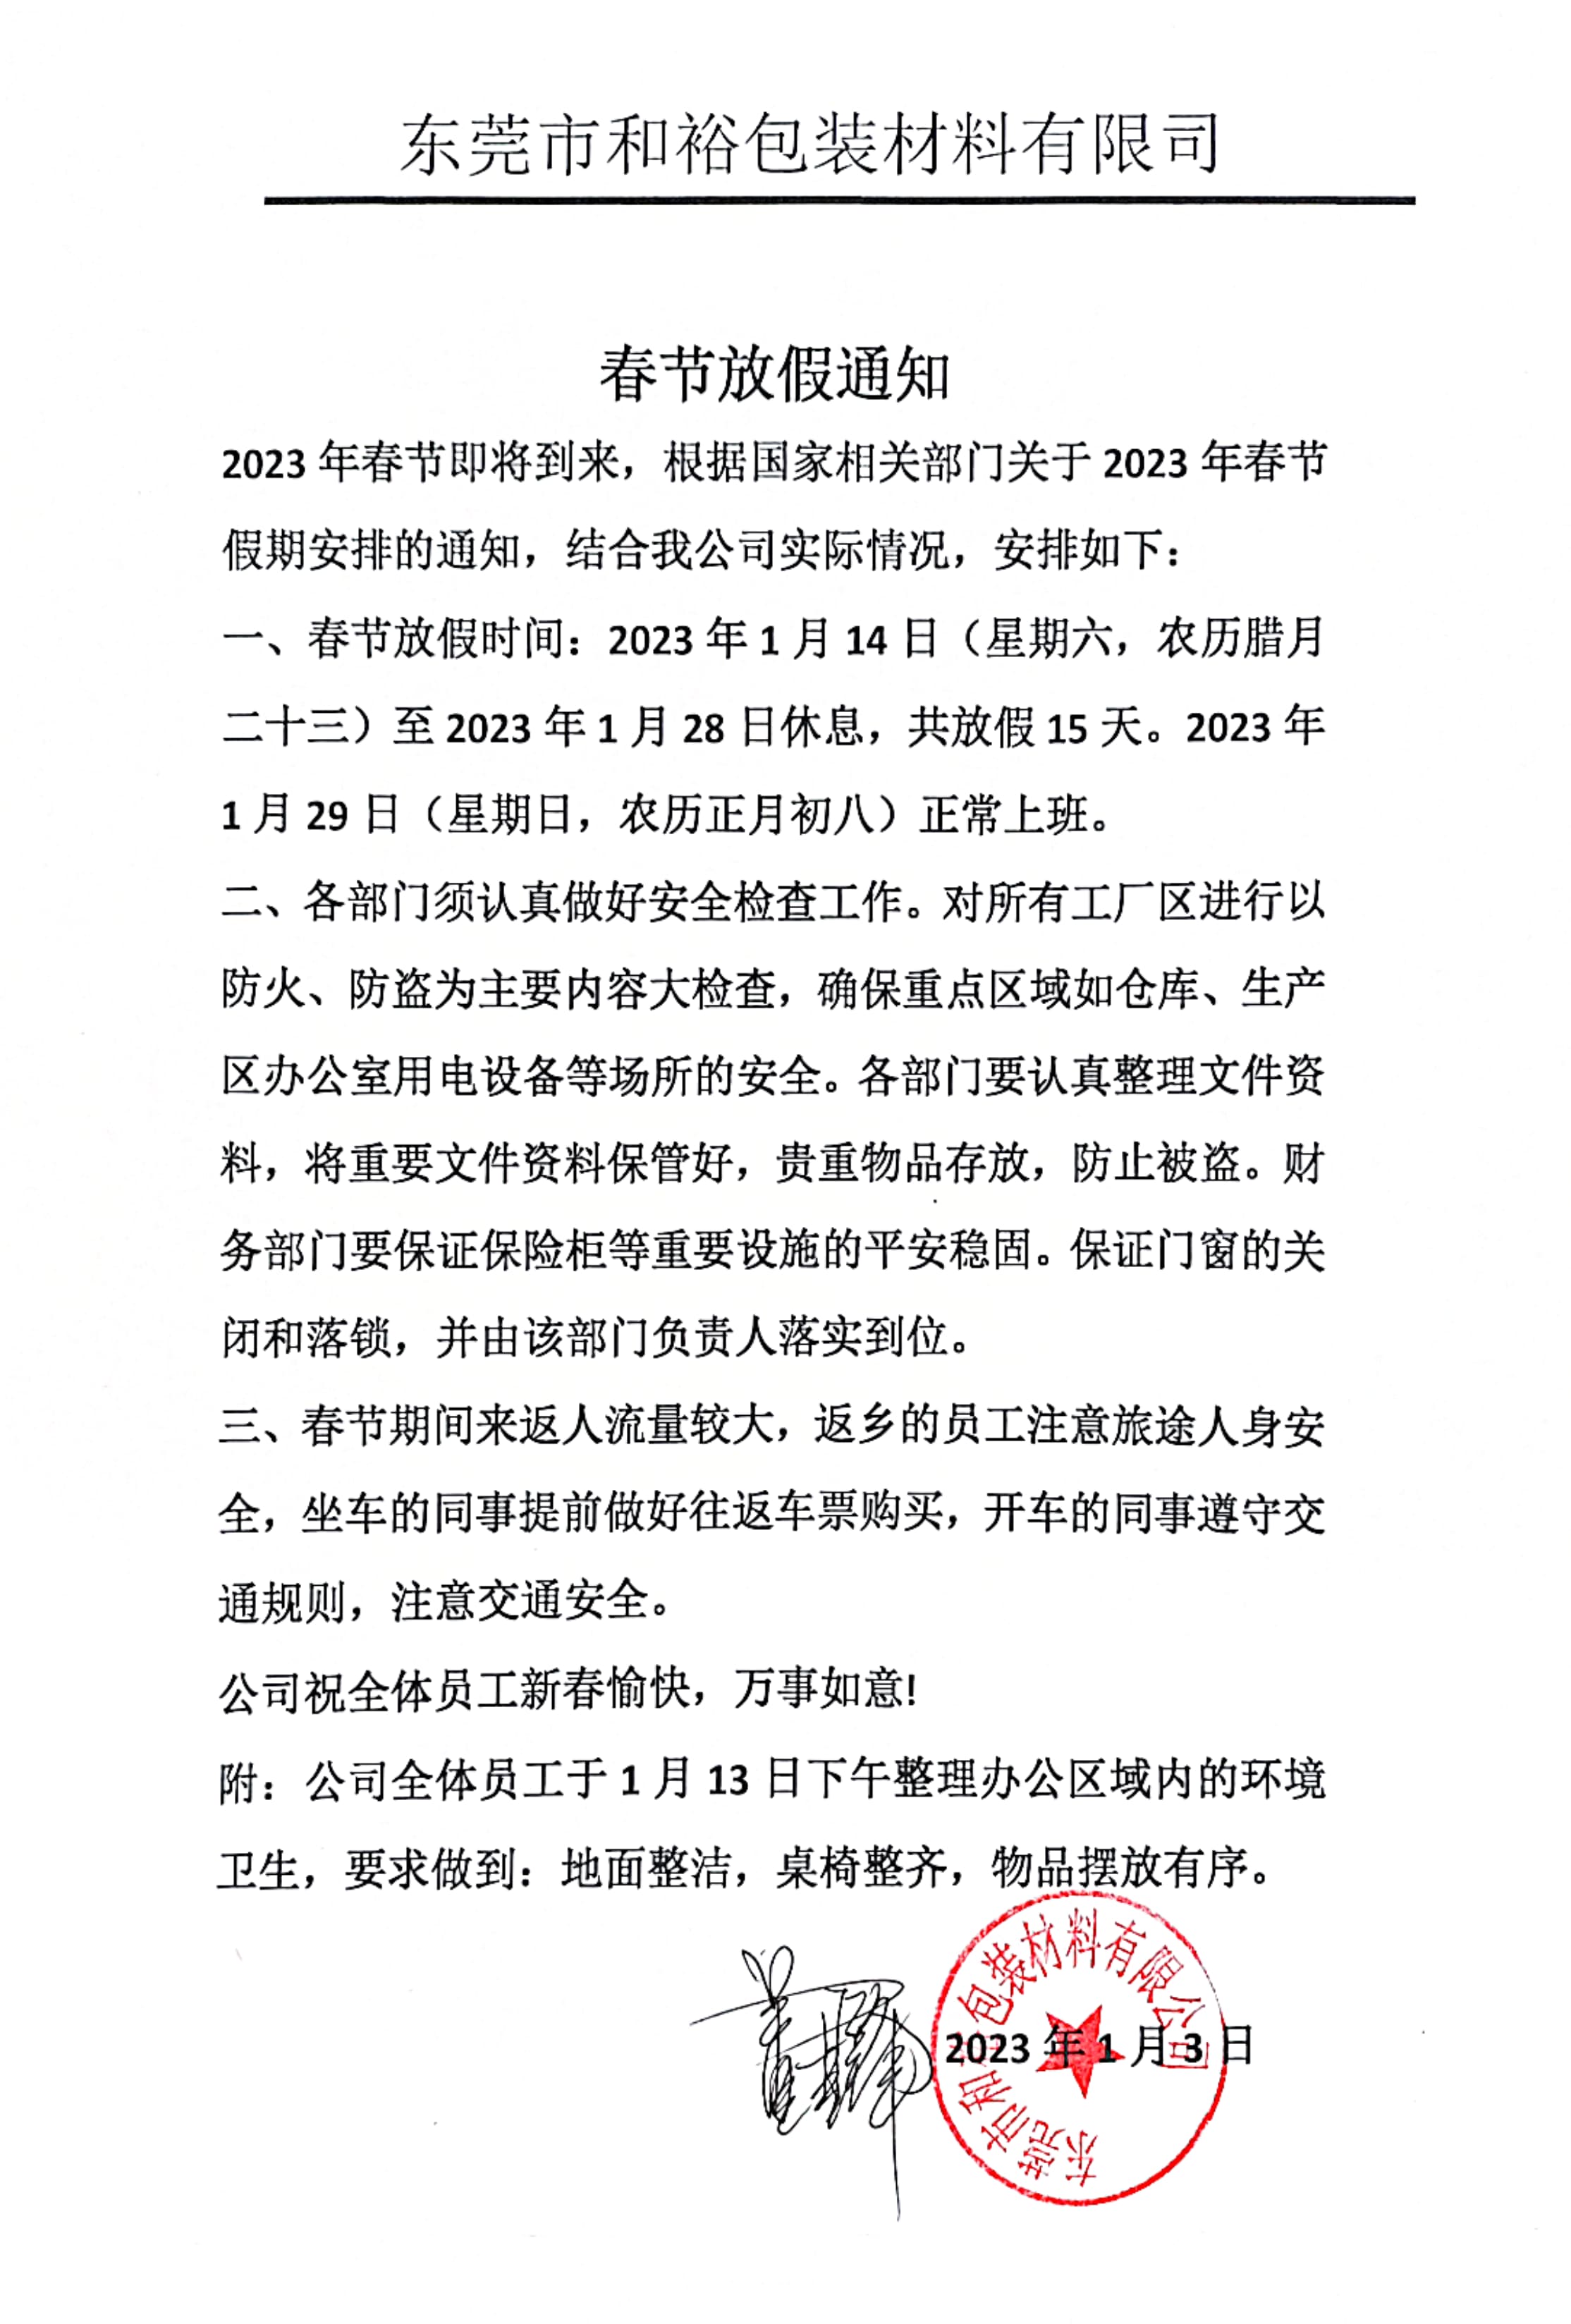 杭州市2023年和裕包装春节放假通知